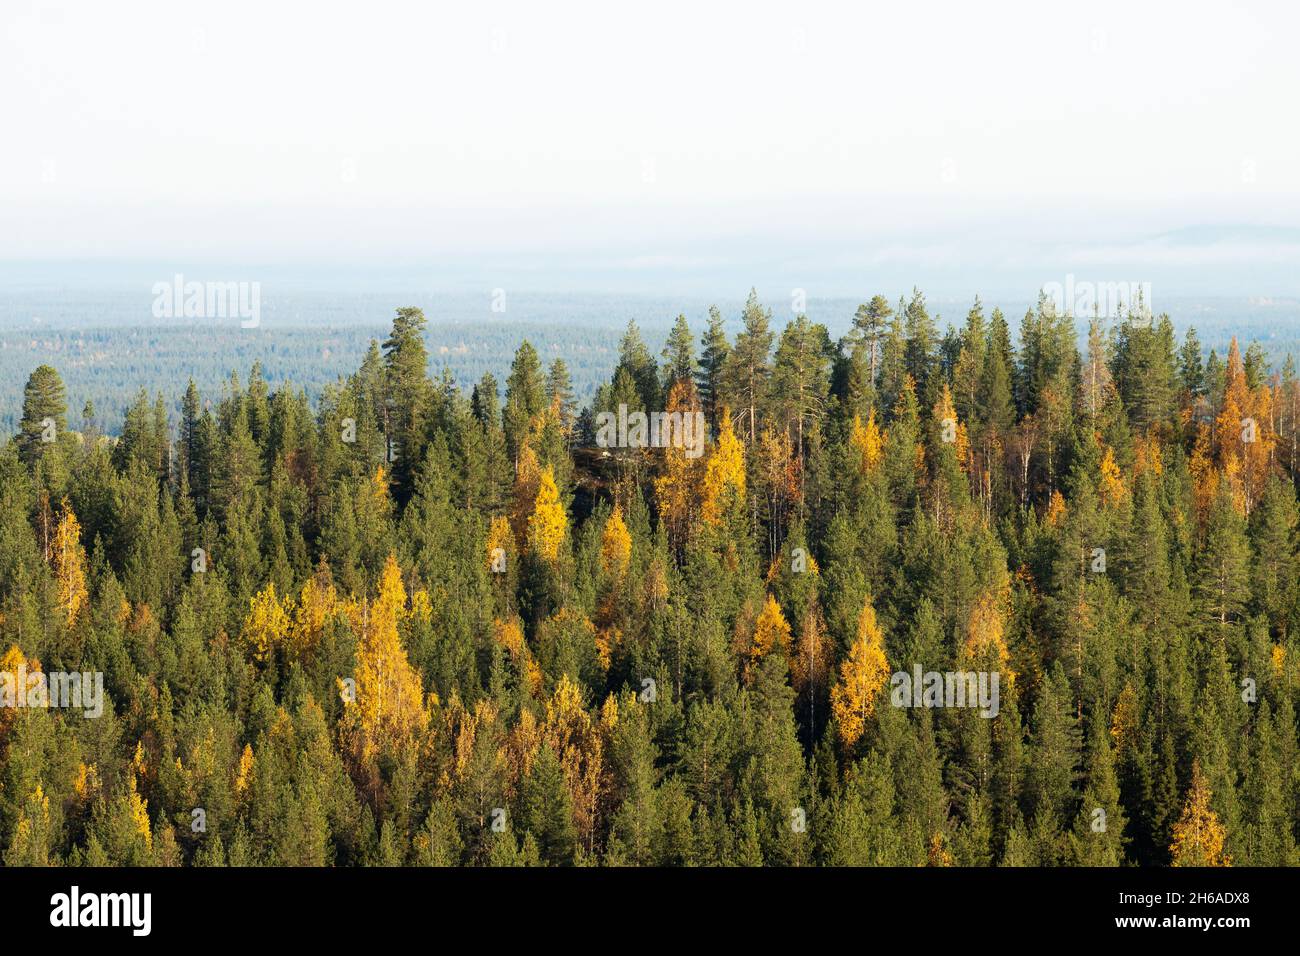 Vue sur la forêt de taïga automnale avec des collines et des montagnes tirées de Valtavaara colline près de Kuusamo, la nature finlandaise, l'Europe du Nord. Banque D'Images